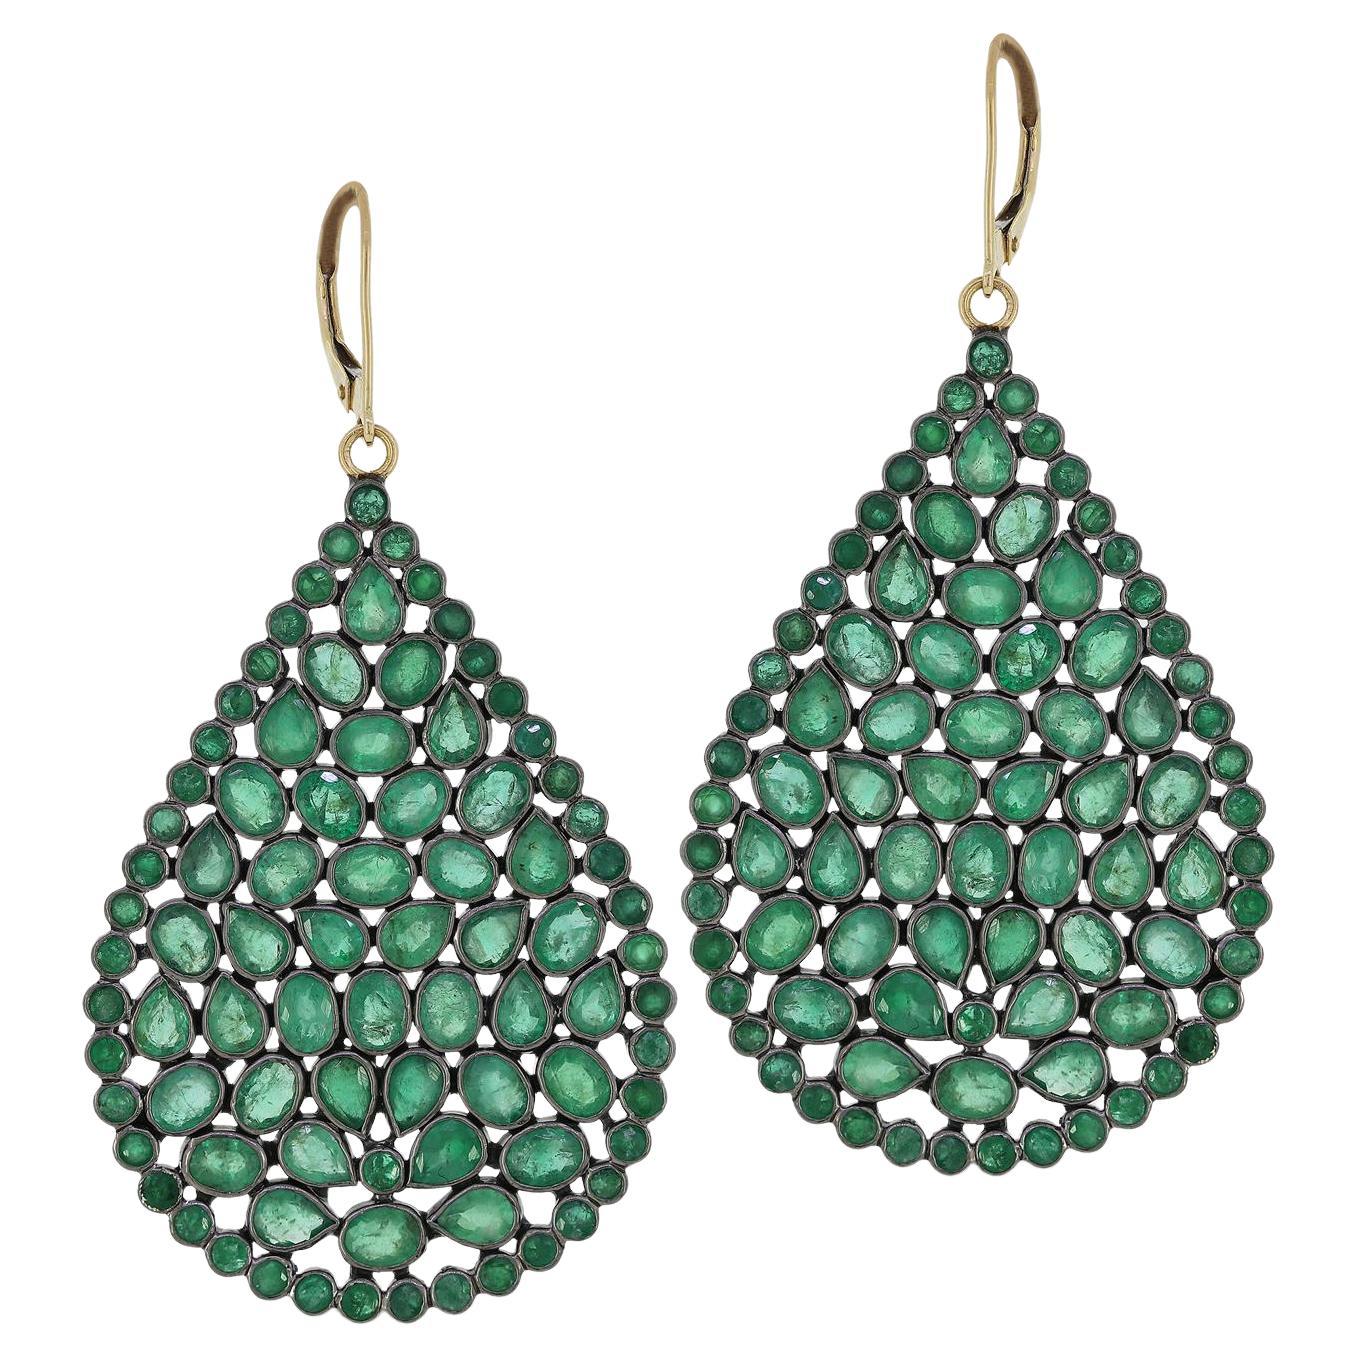 Gemistry 16cts Emerald Victorian Pear Drop Earrings in 18k/14k Sterling Silver For Sale